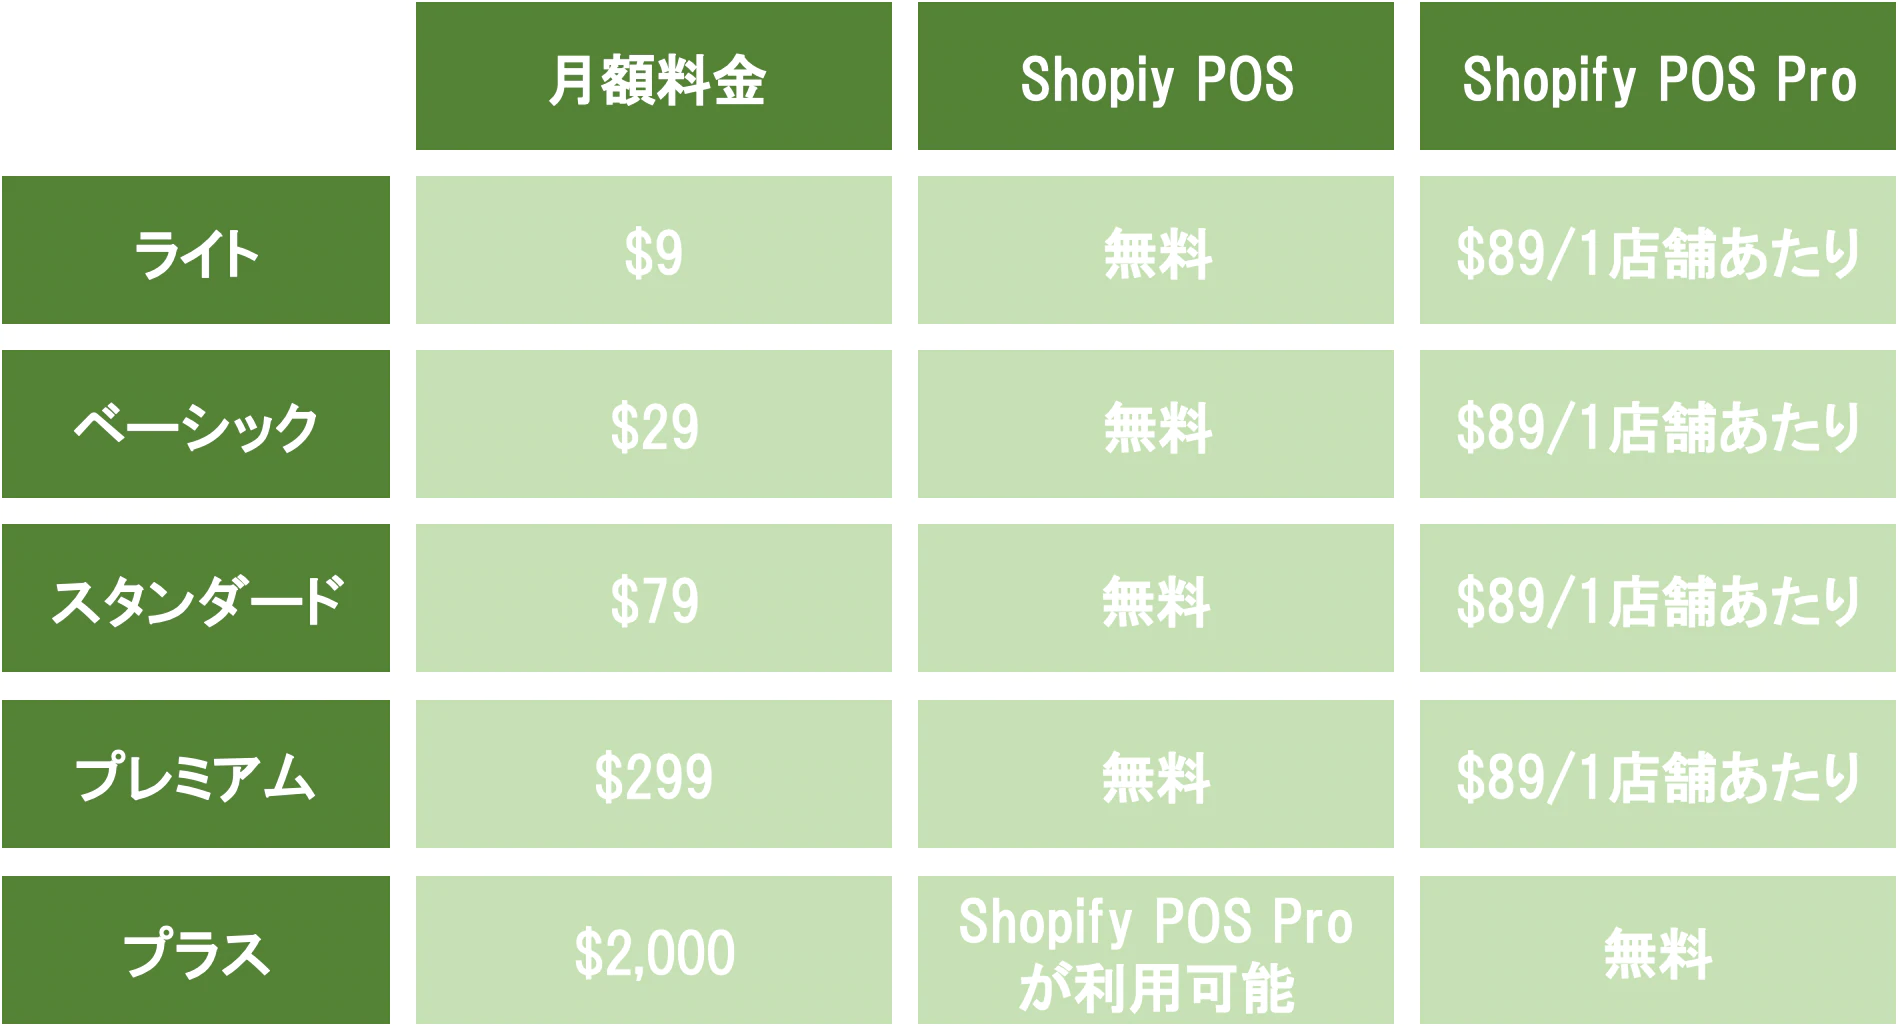 全てのプランで無料のShopify POSと、さらに高機能なShopify POS Pro